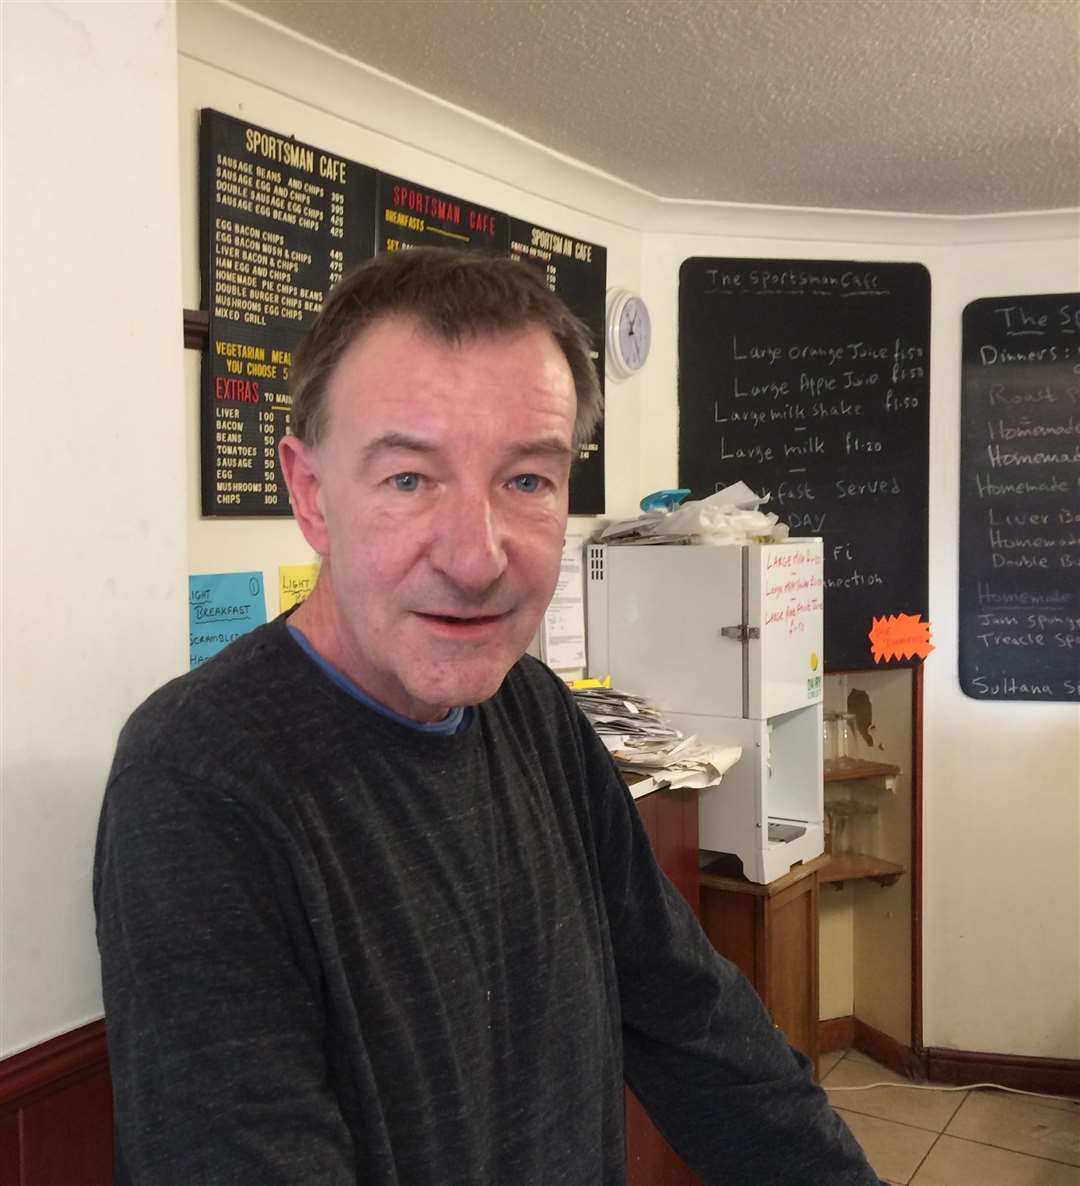 Owner of the Sportsman Cafe David Richardson